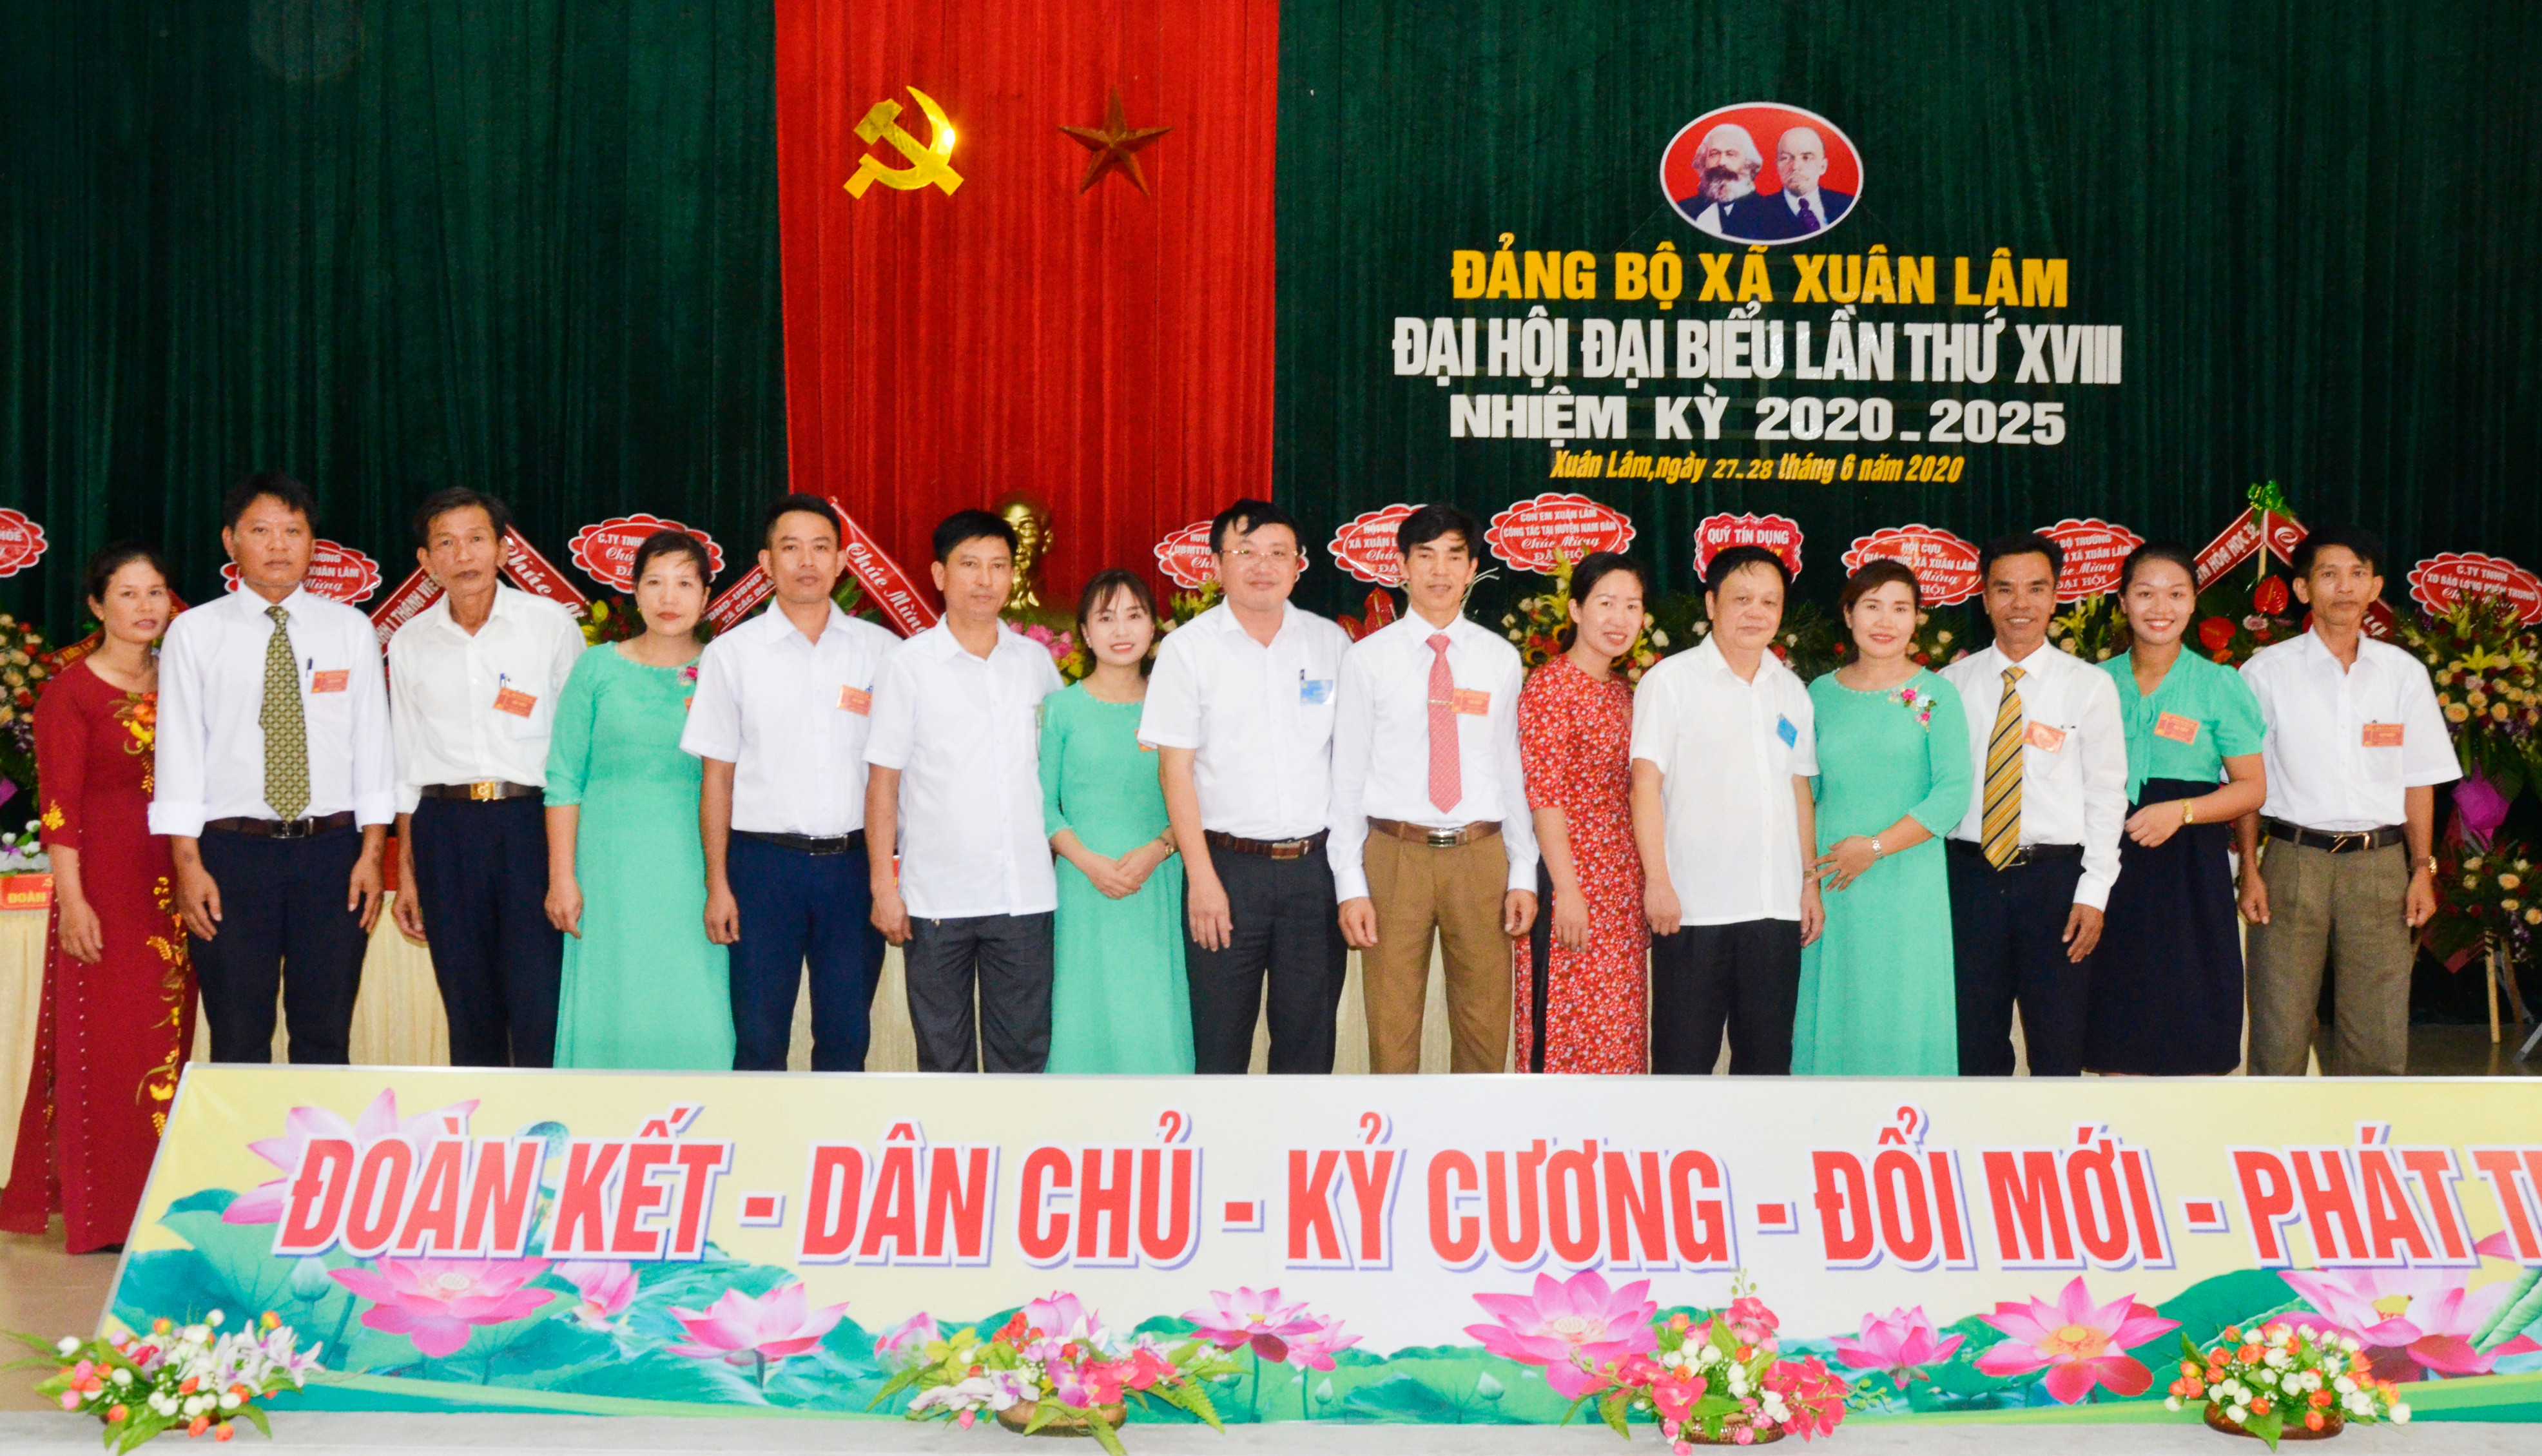 Ra mắt Ban chấp hành Đảng bộ xã Xuân Lâm lần thứ XXVIII, nhiệm kỳ 2020-2025. Ảnh: Thanh Lê